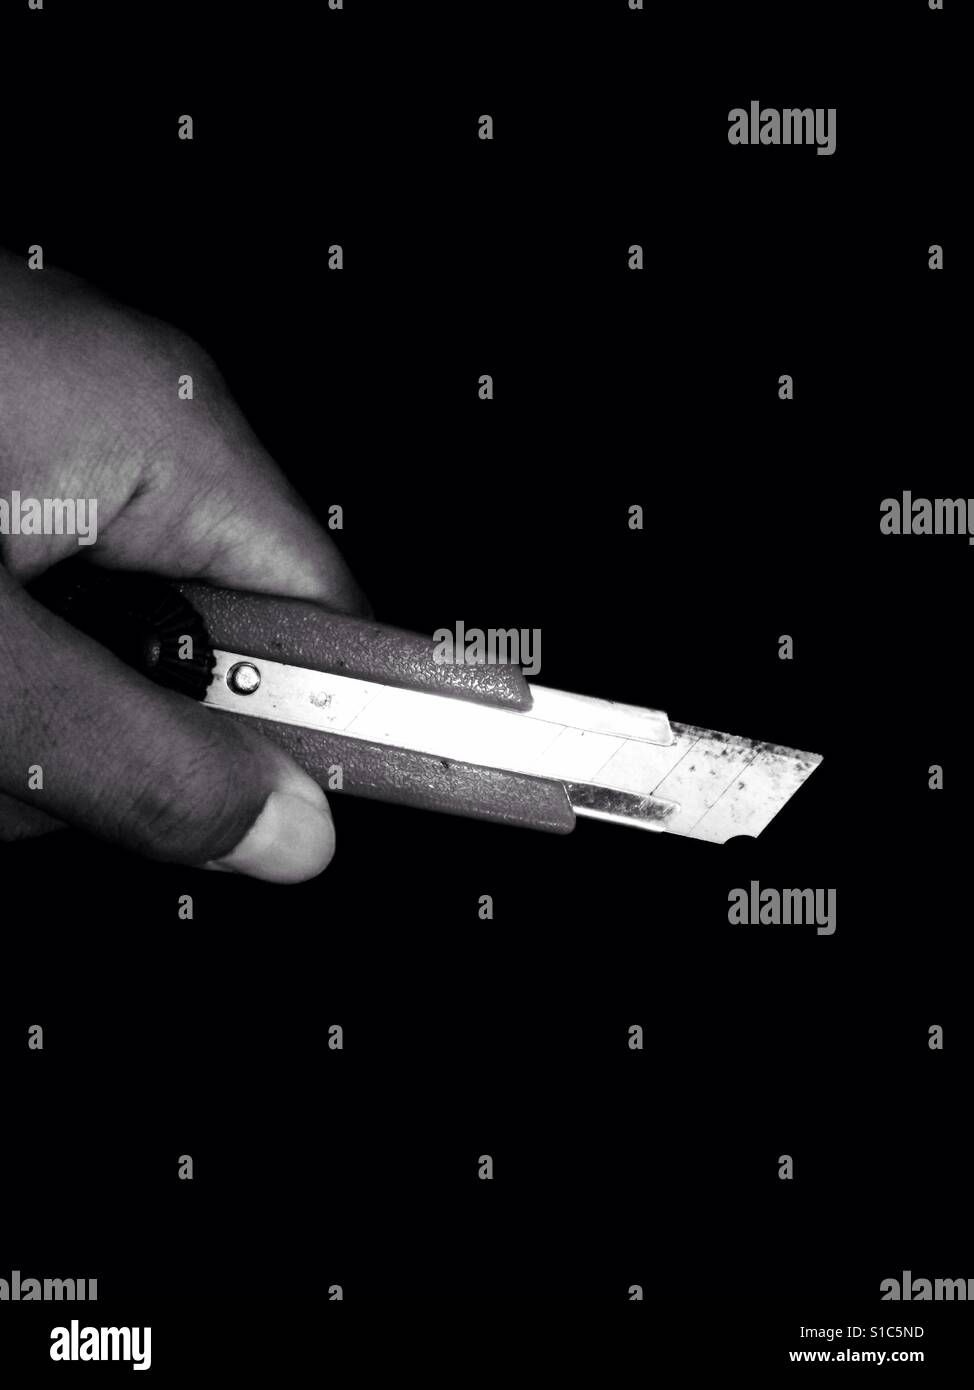 Hand Holding Cuttermesser - schwarz und weiß - schwarzen Hintergrund Stockfoto